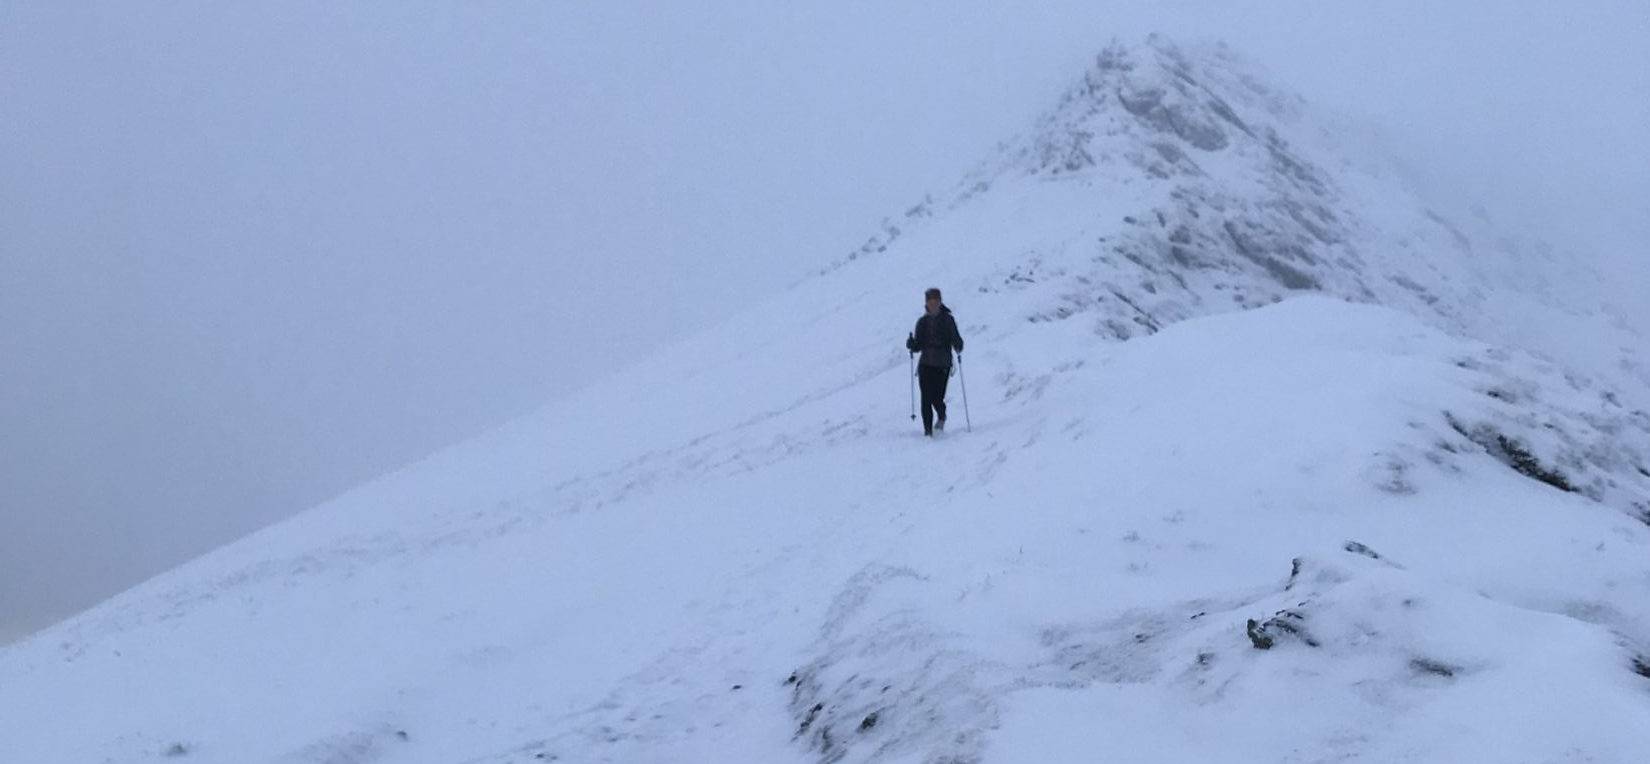 Runner descending Elidir Fawr in the snow